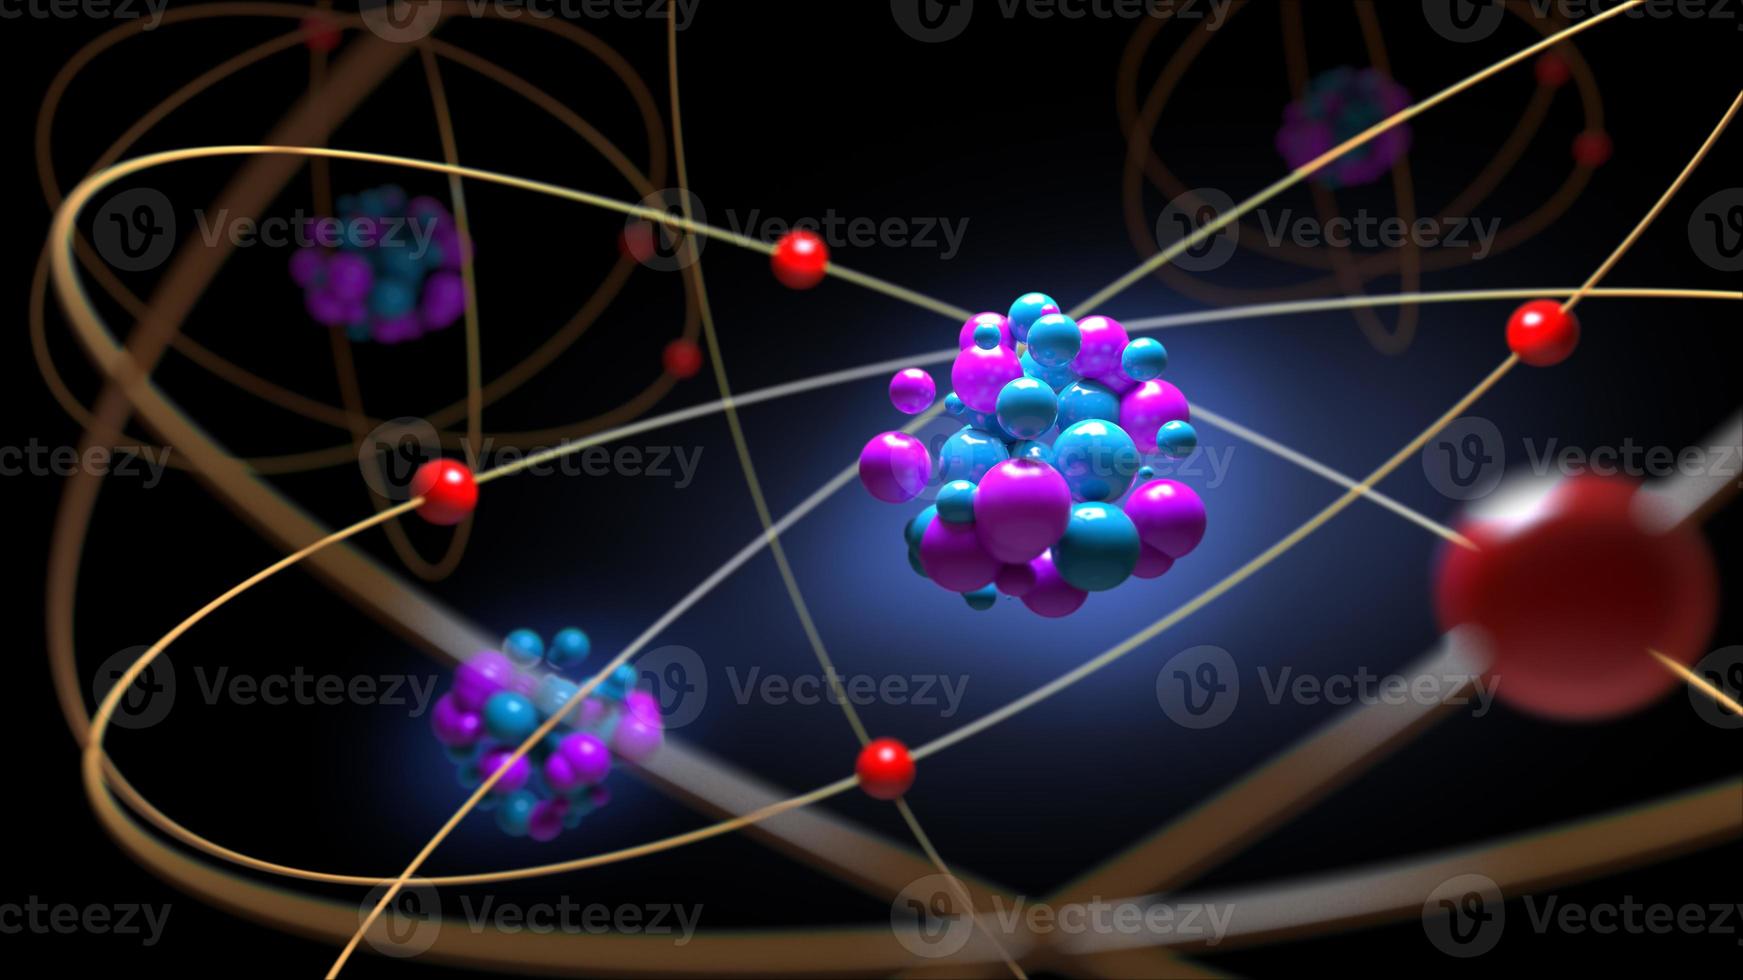 átomos prótons nêutrons elétrons, conceito de física, renderização em 3d. foto